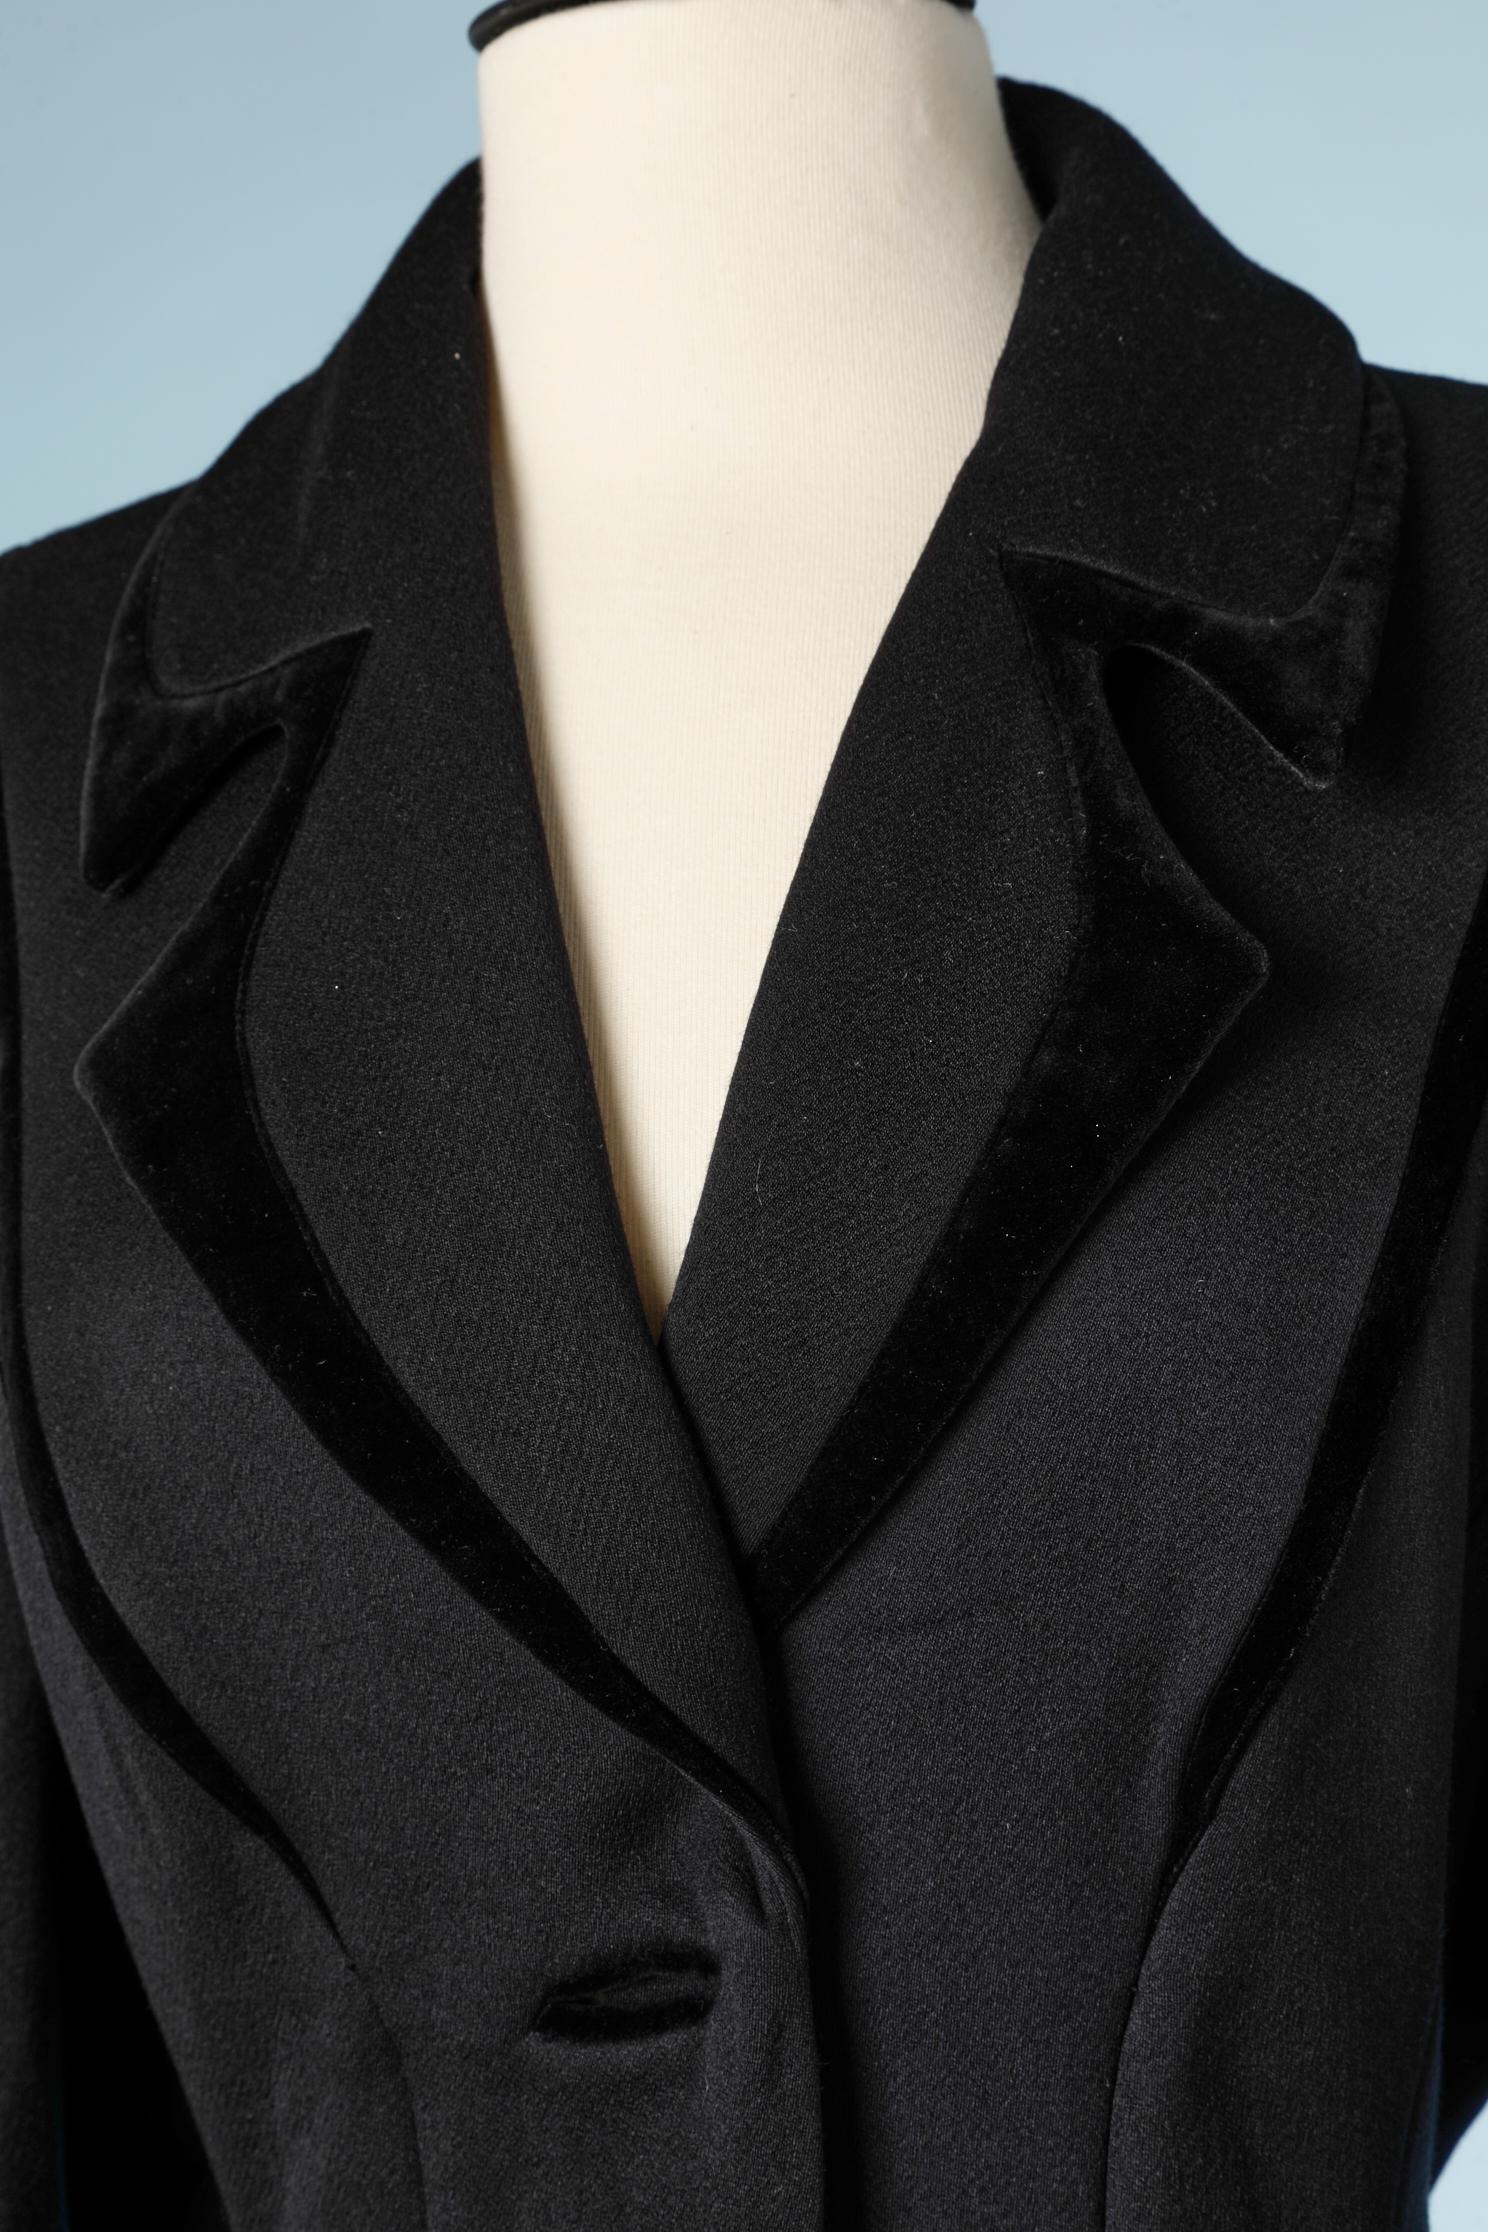 Long black wool and velvet coat. 